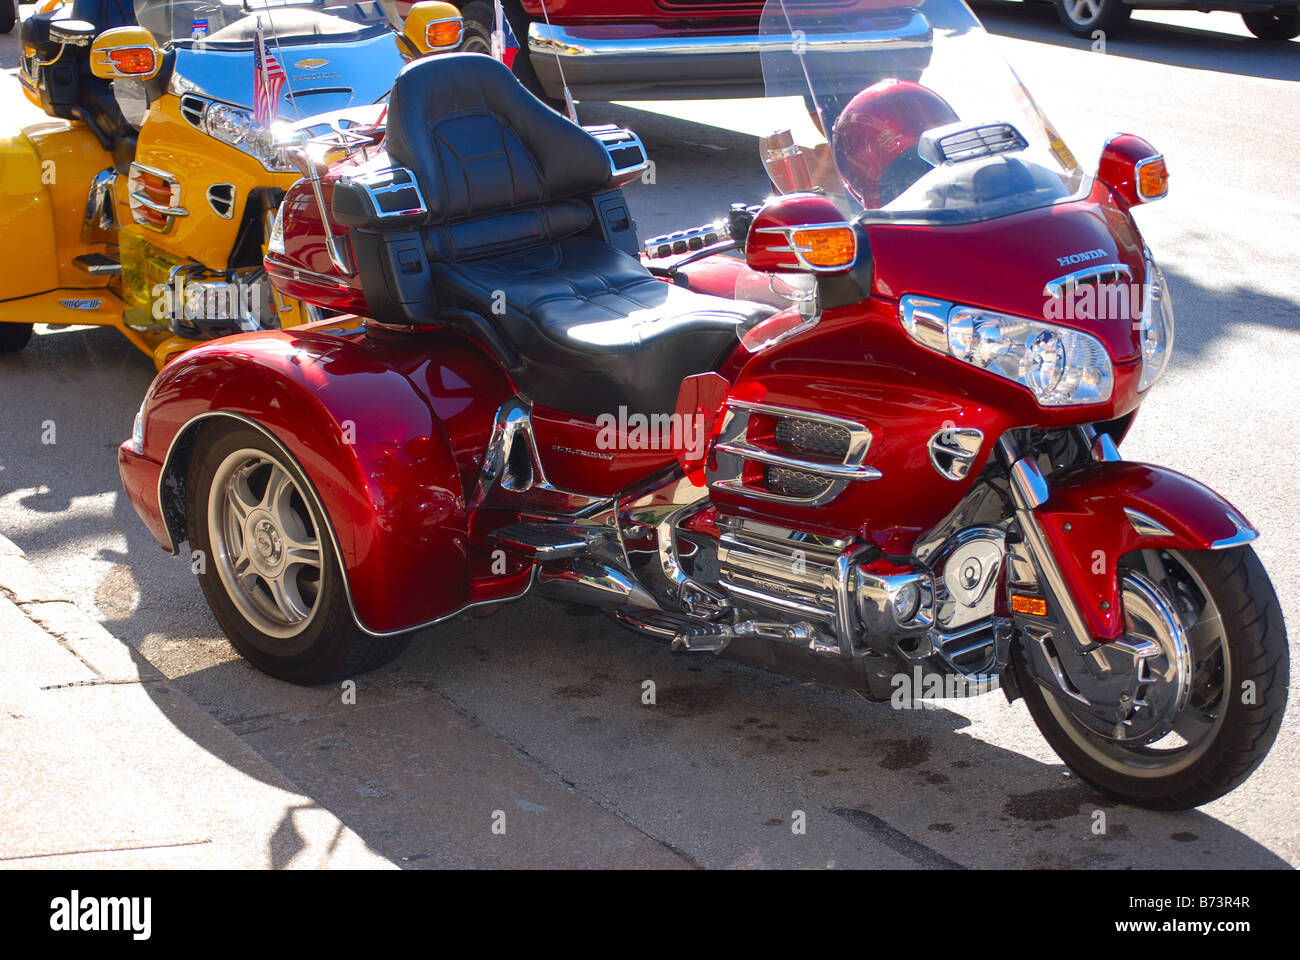 Motociclo a tre ruote immagini e fotografie stock ad alta risoluzione -  Alamy